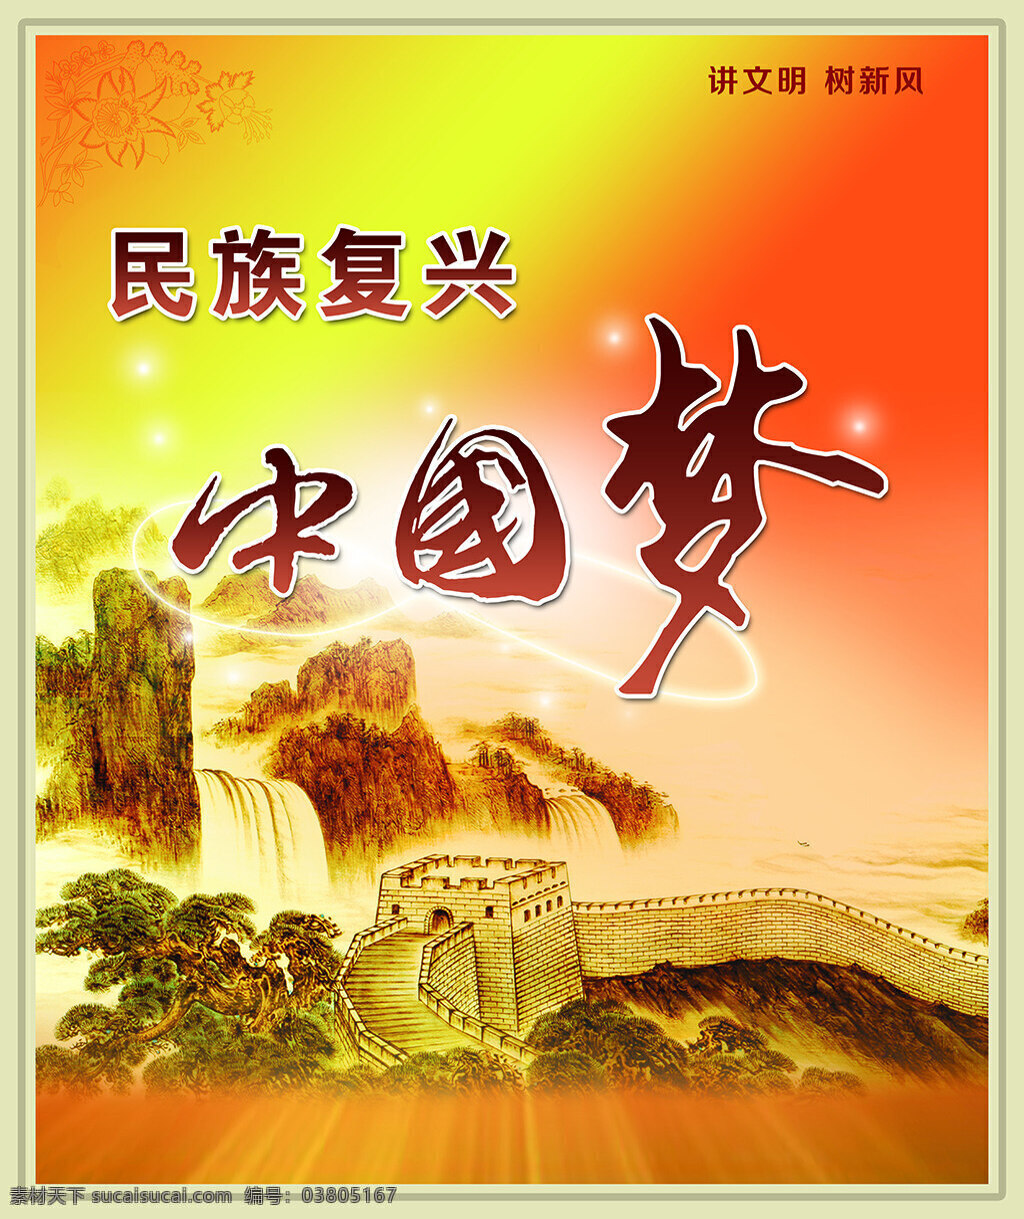 中国 梦 民族 复兴 中国梦 民族复兴 党建 手绘城墙 黄色